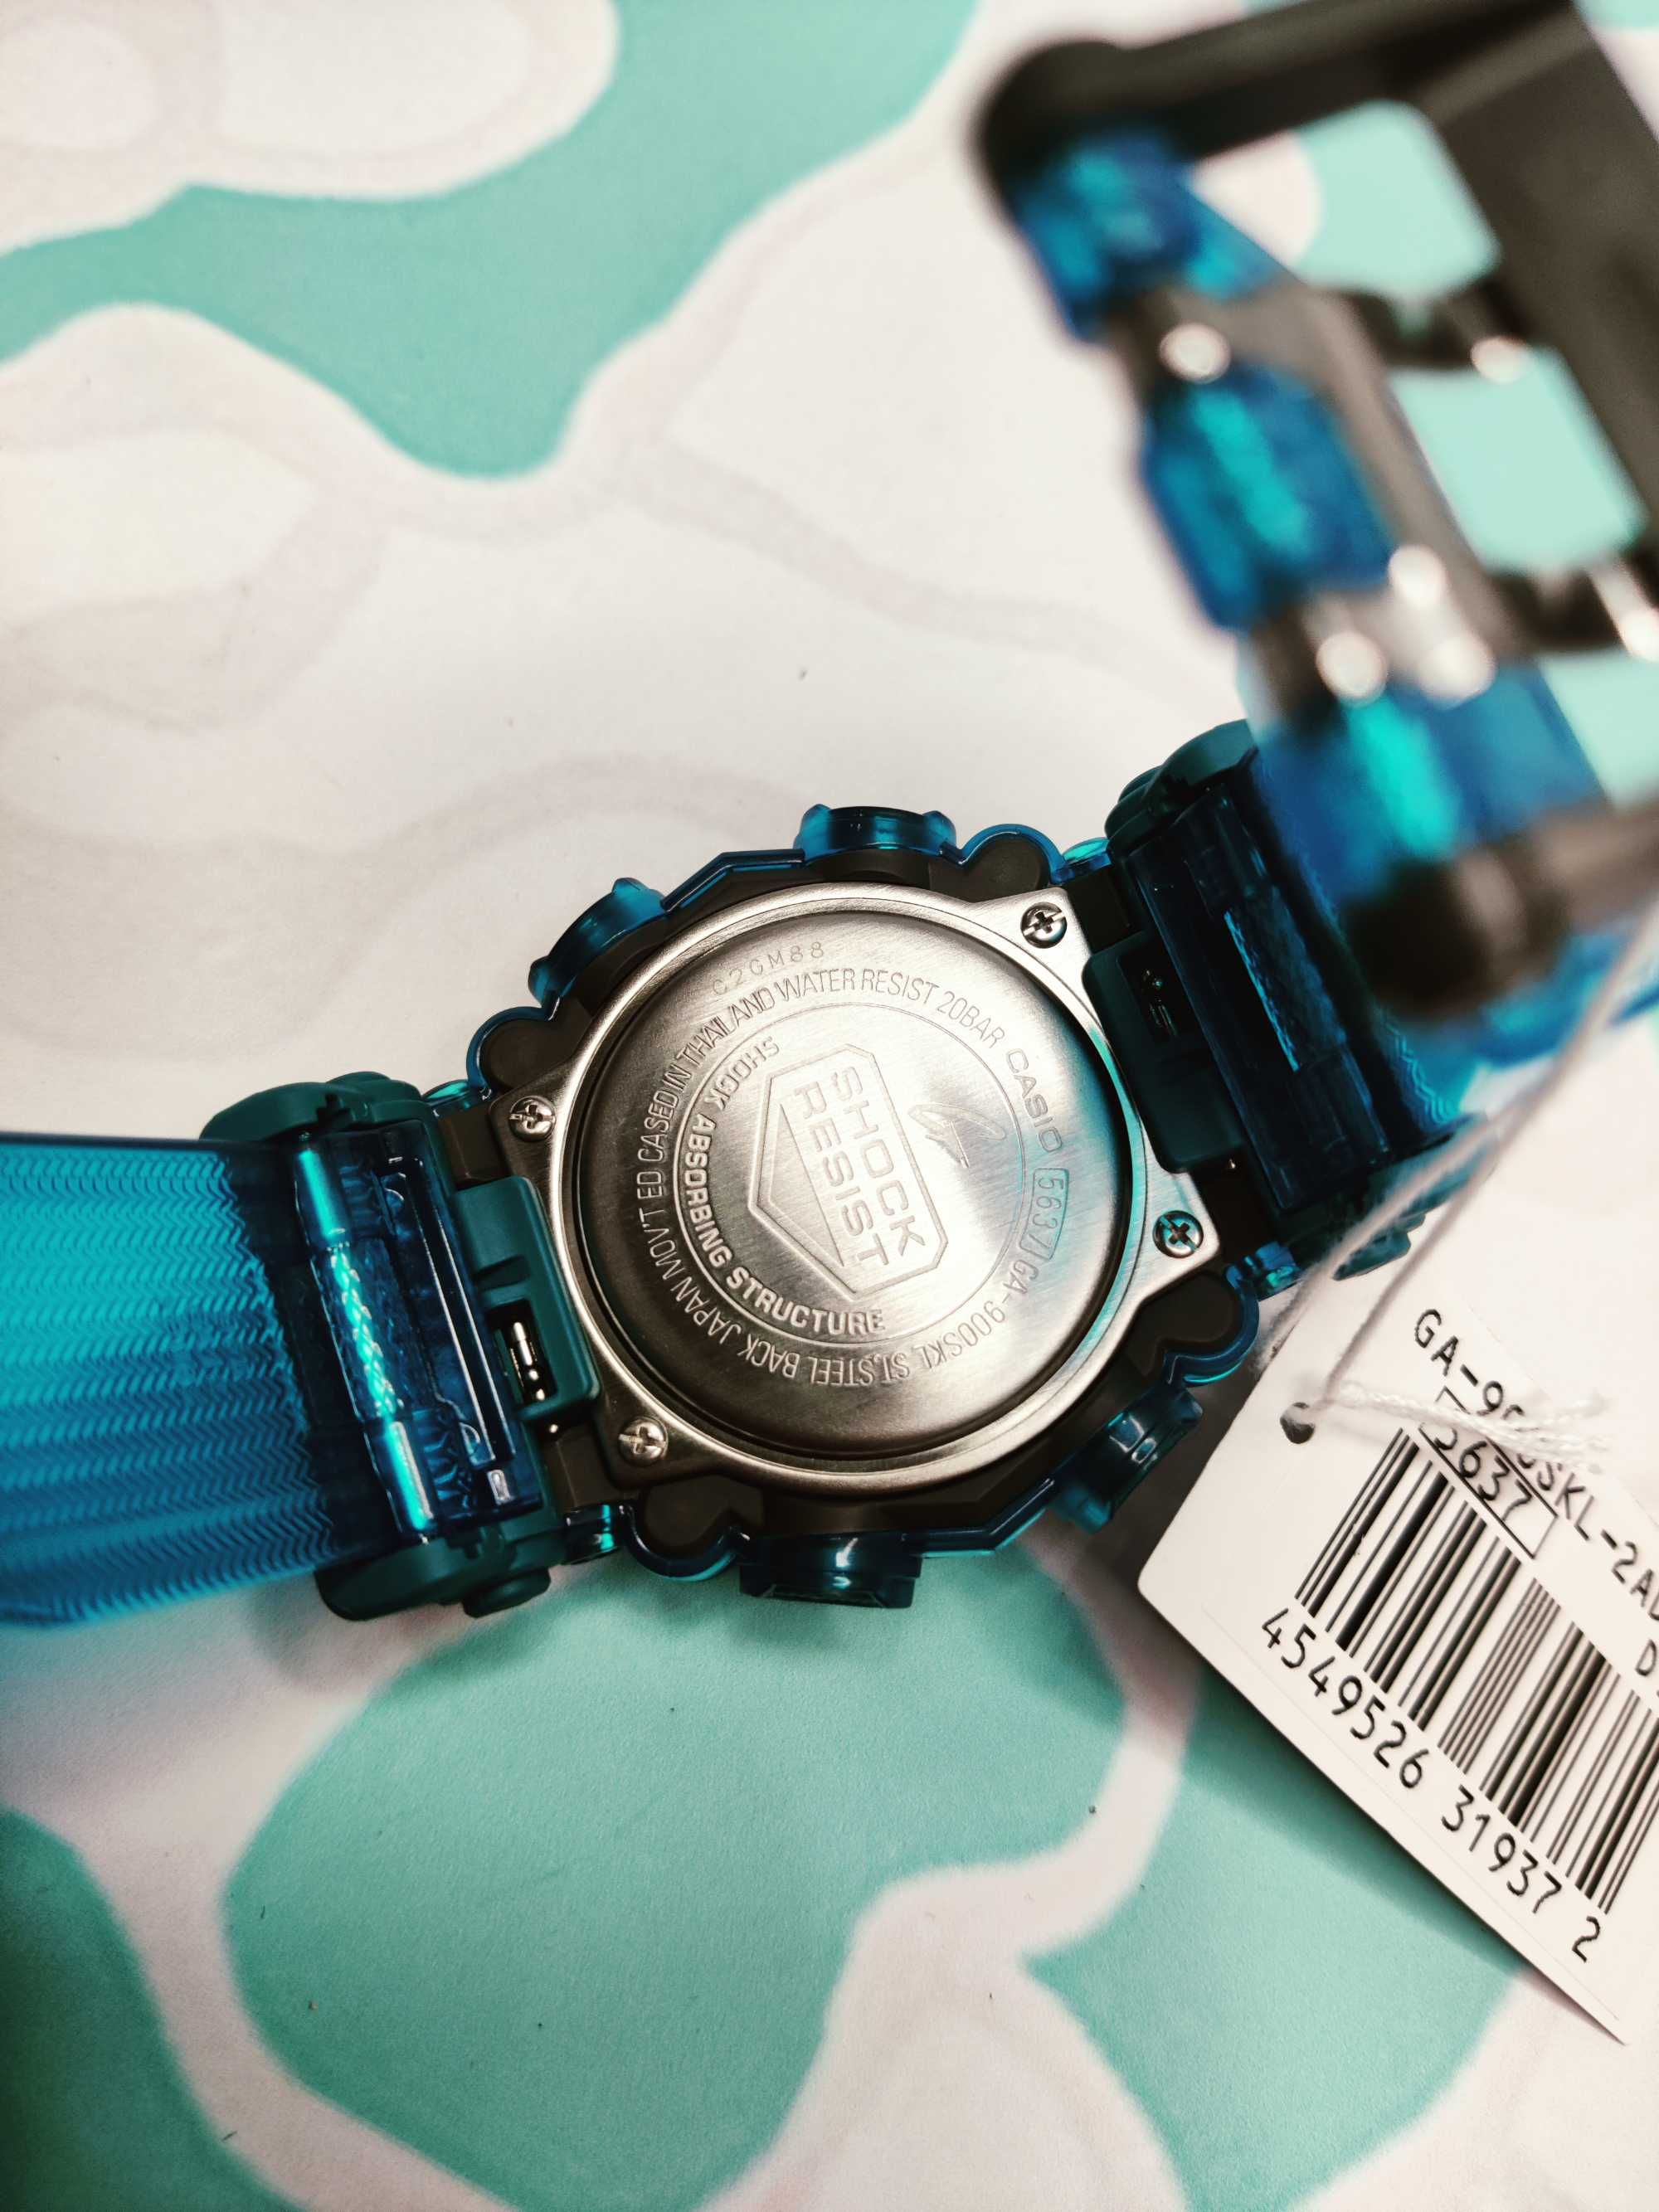 Casio G-Shock GA-900SKL-2AER наручные часы скелетоны синие спортивные